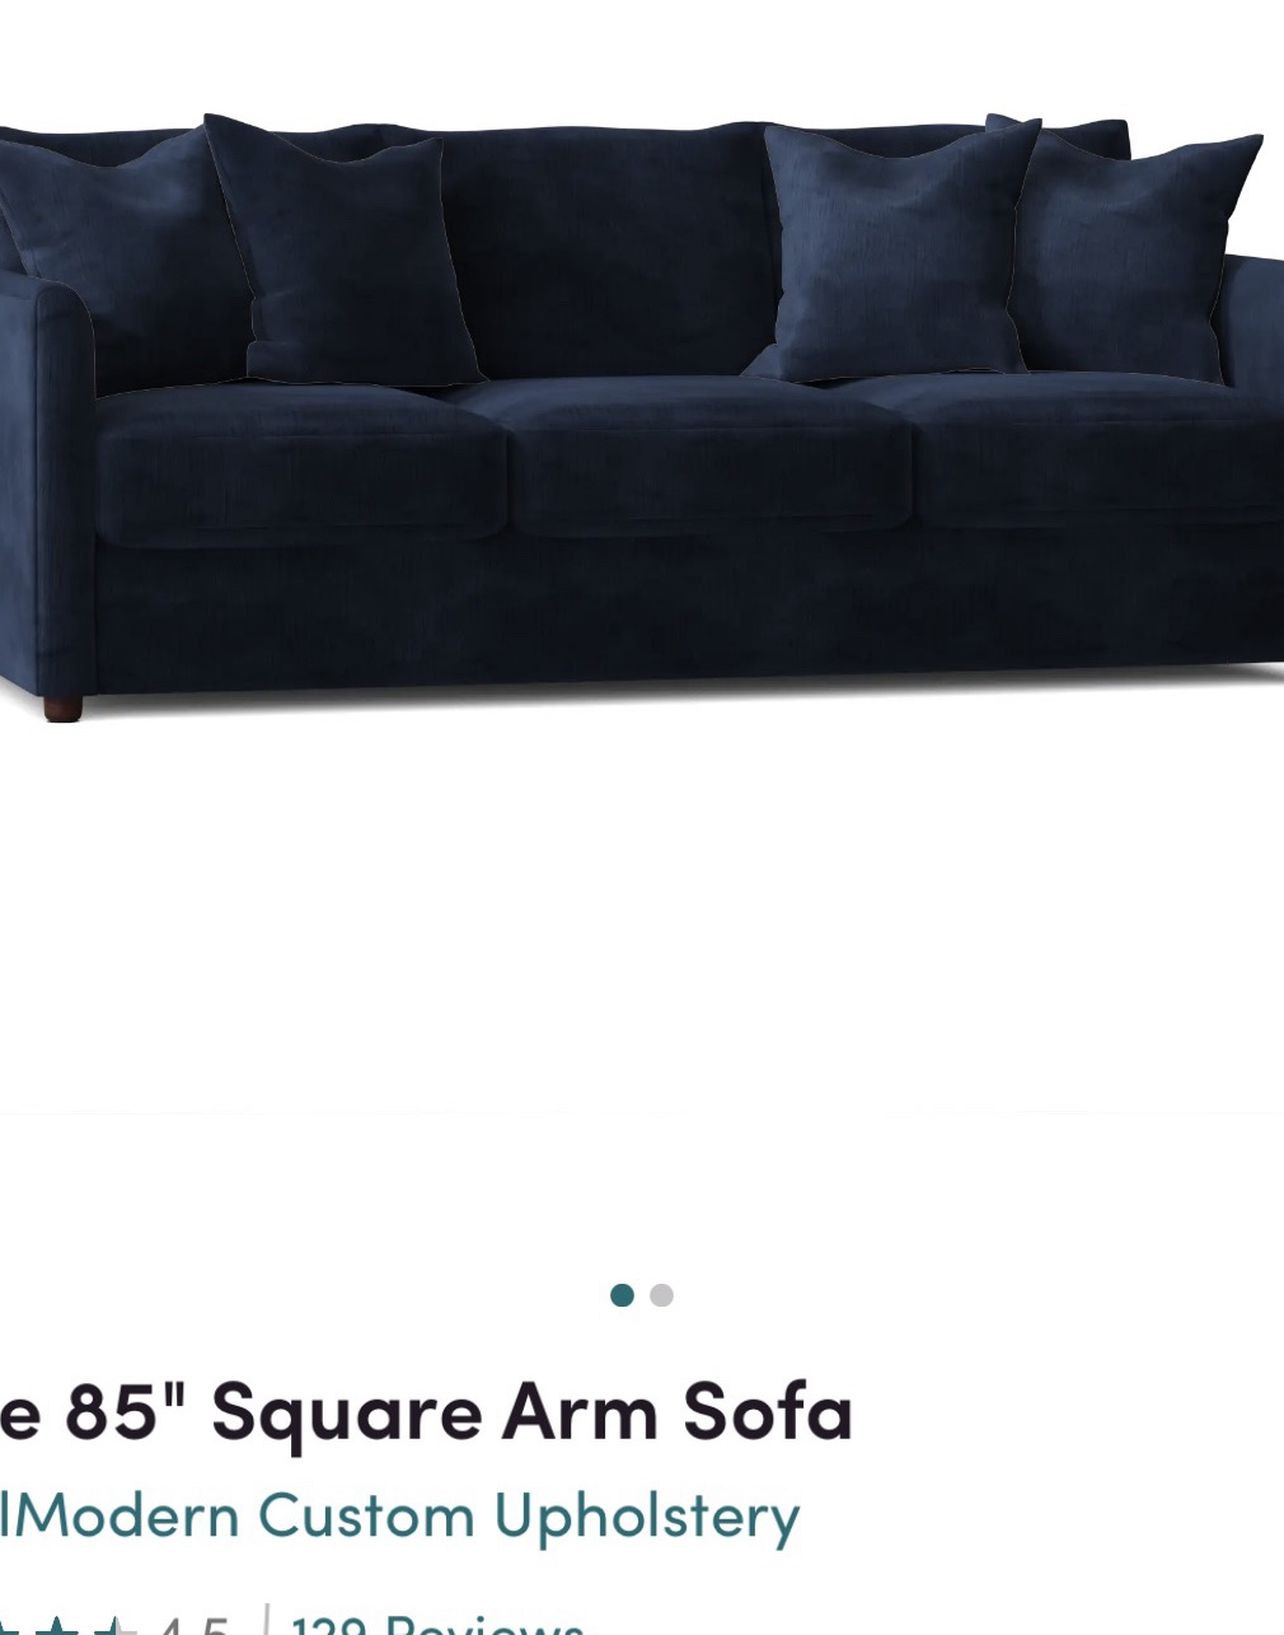 Alice 85” Square Arm Sofa